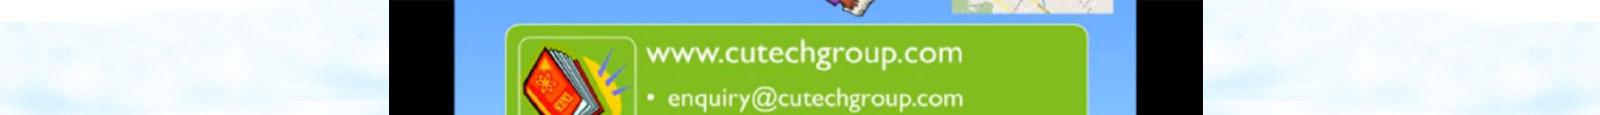 Cutechgroup